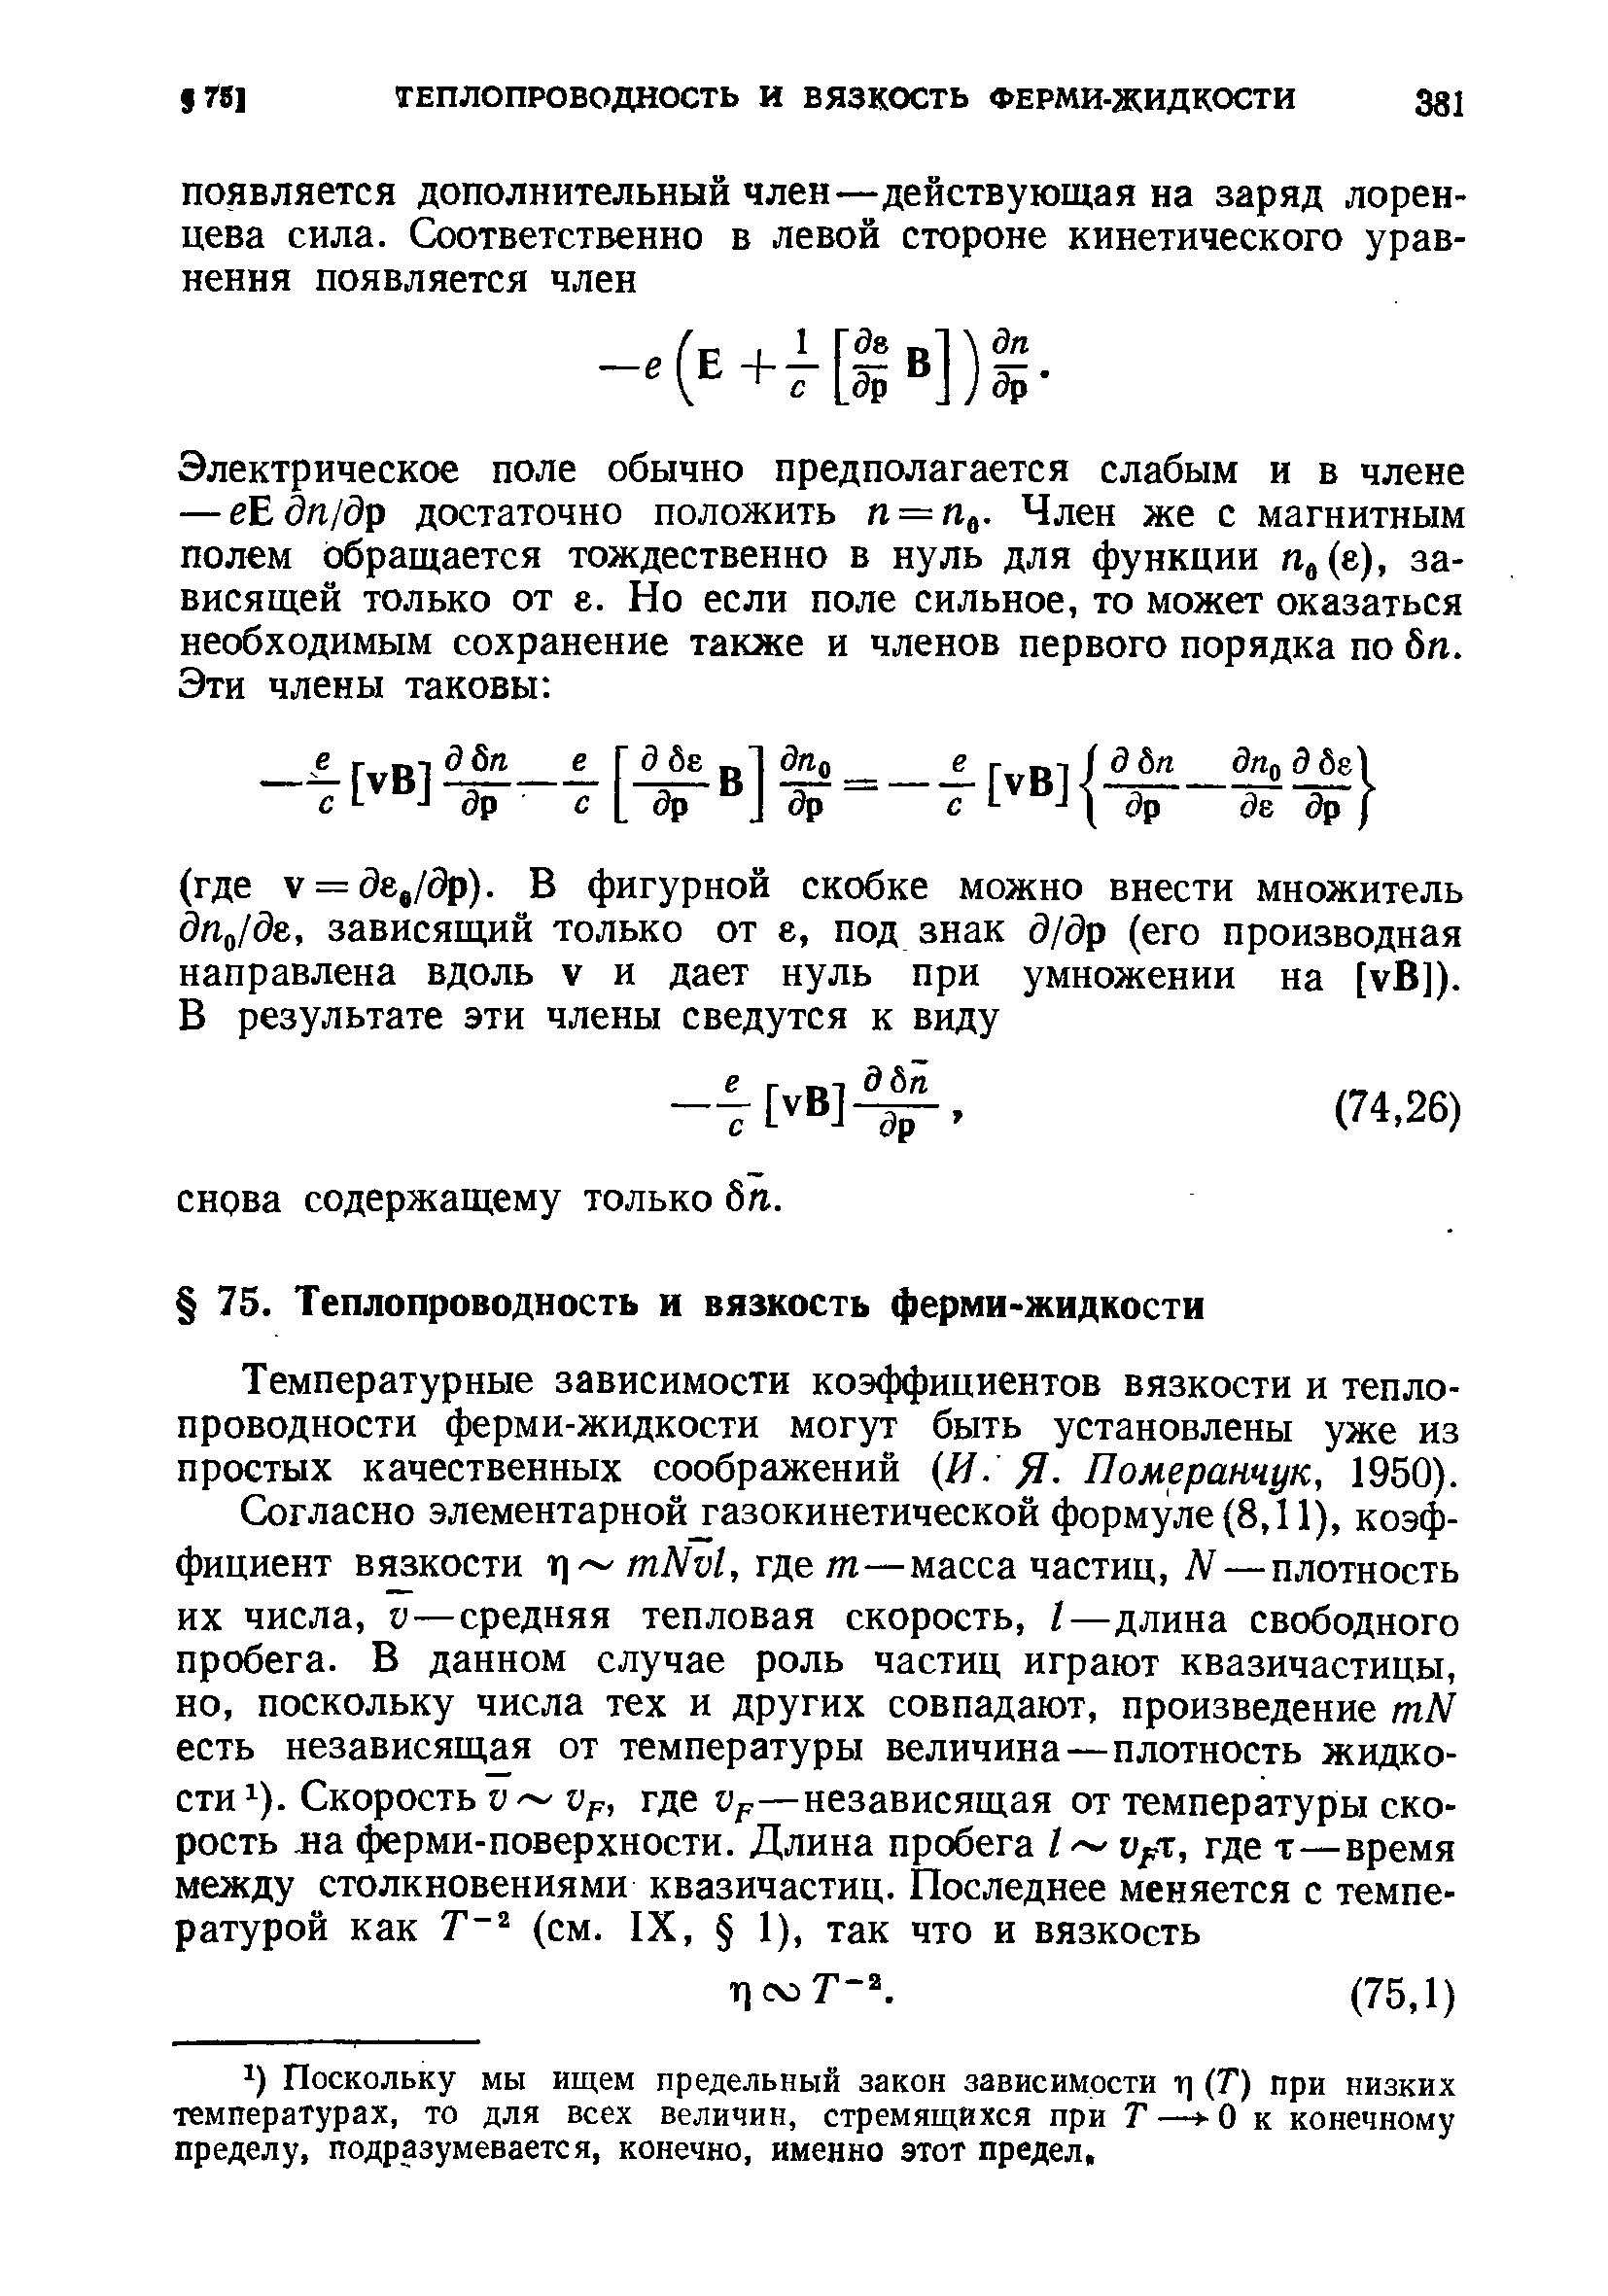 Температурные зависимости коэффициентов вязкости и теплопроводности ферми-жидкости могут быть установлены уже из простых качественных соображений И. Я- Померанчук, 1950).
